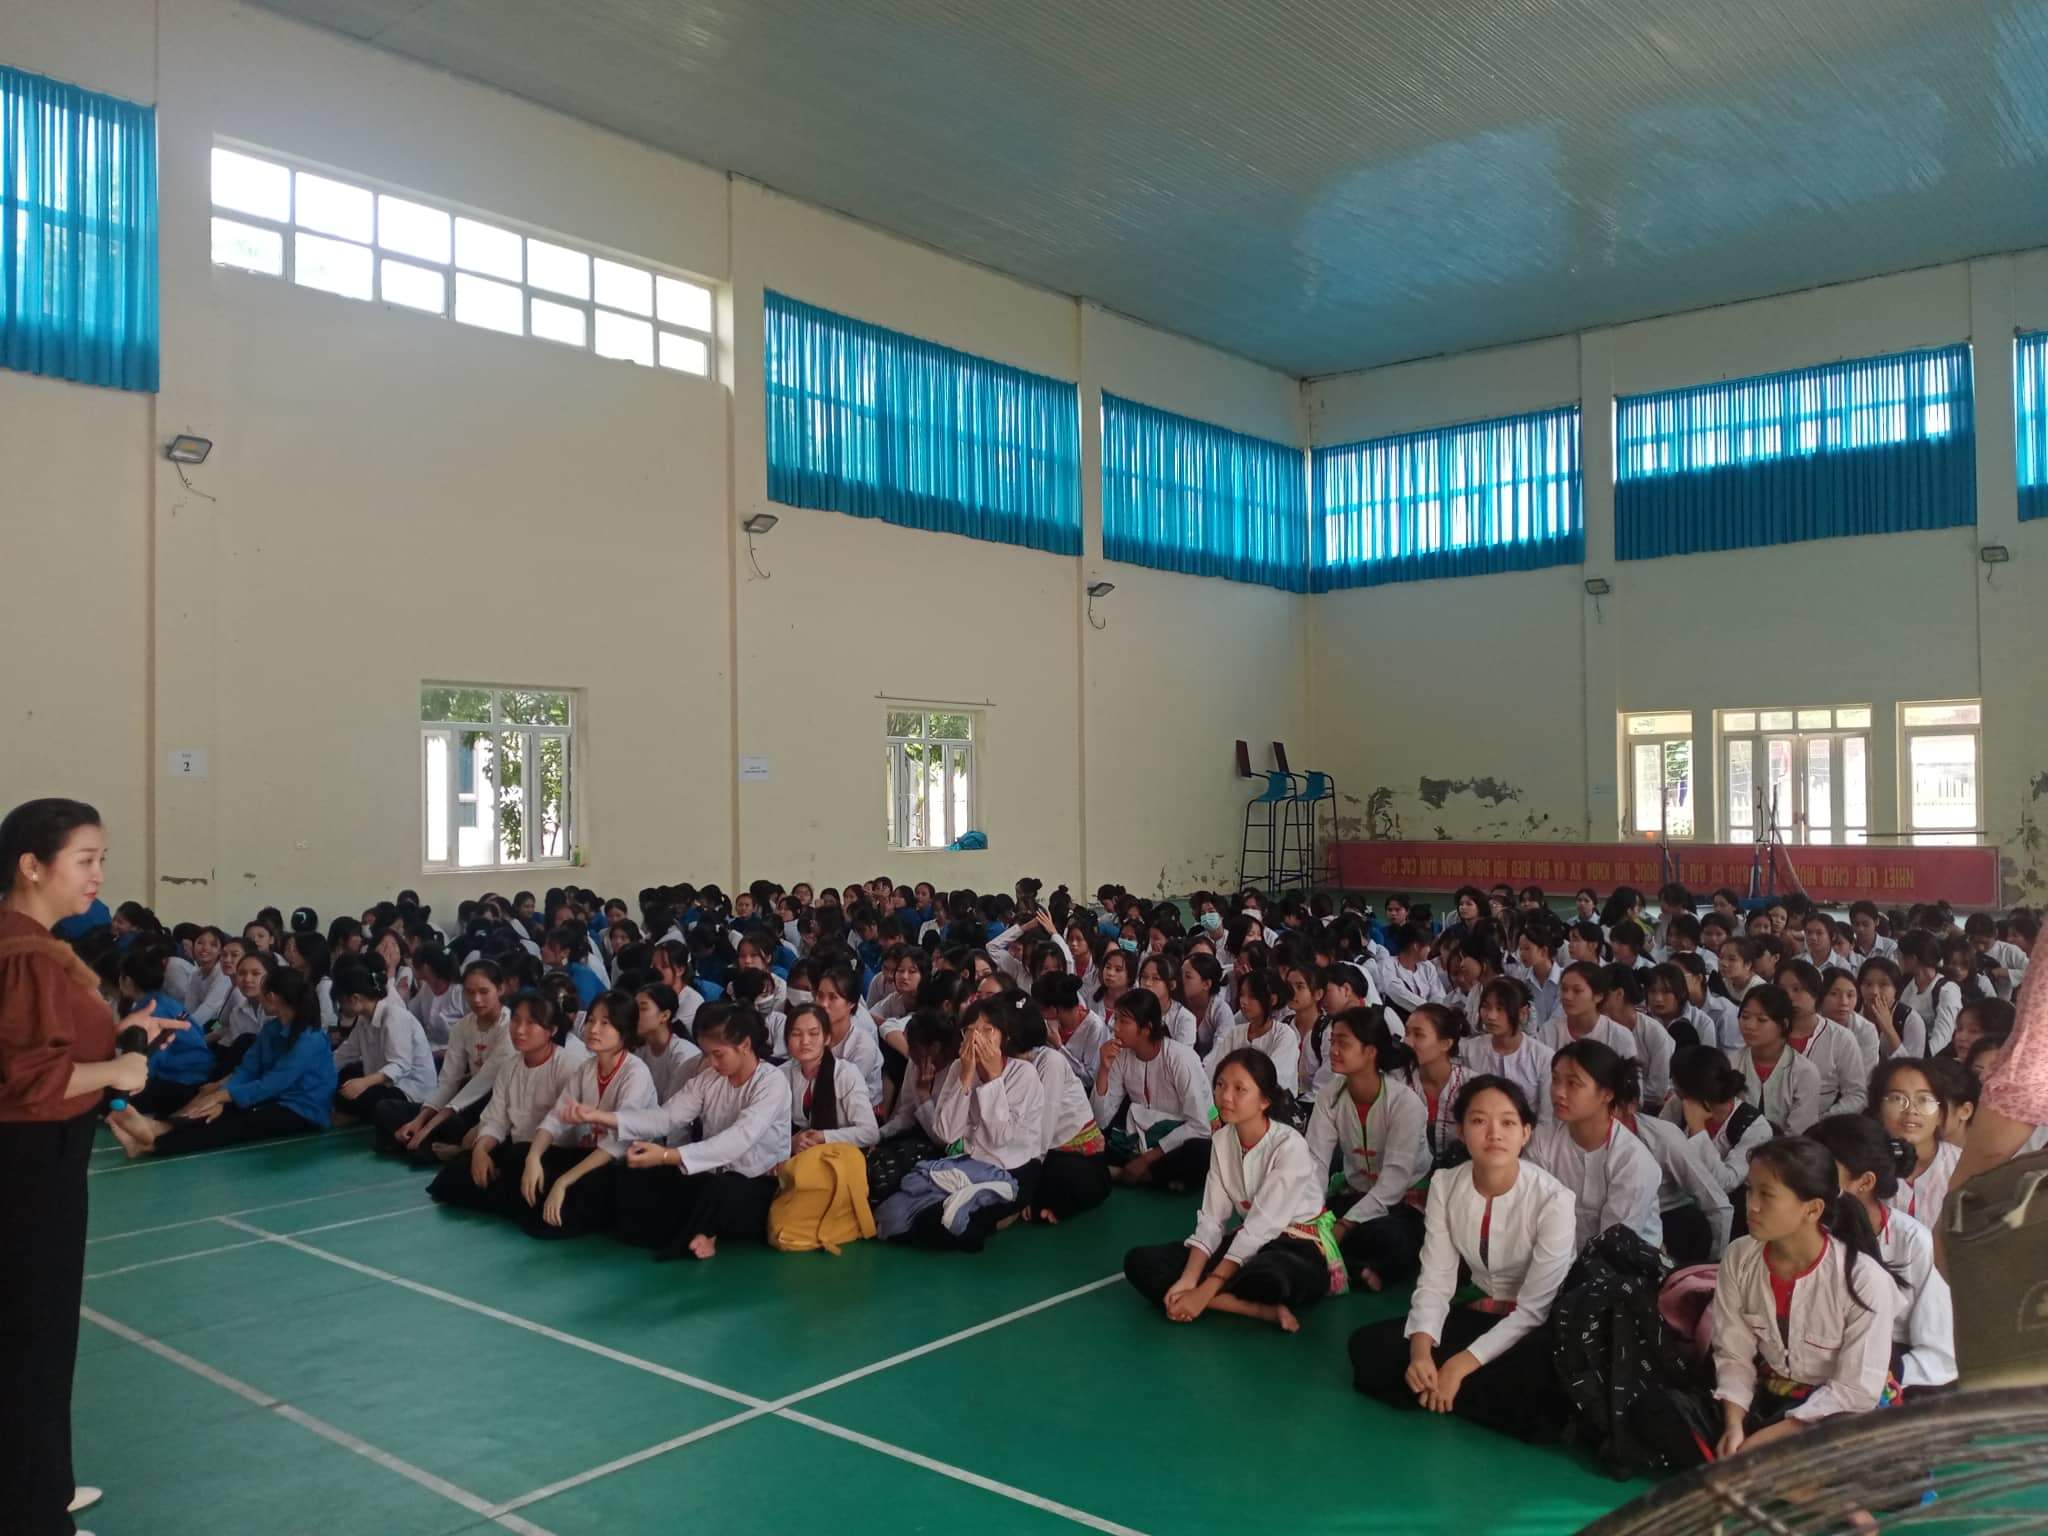 Hơn 100 học sinh Trường THPT dân tộc nội trú Ninh Bình được tư vấn, hướng nghiệp